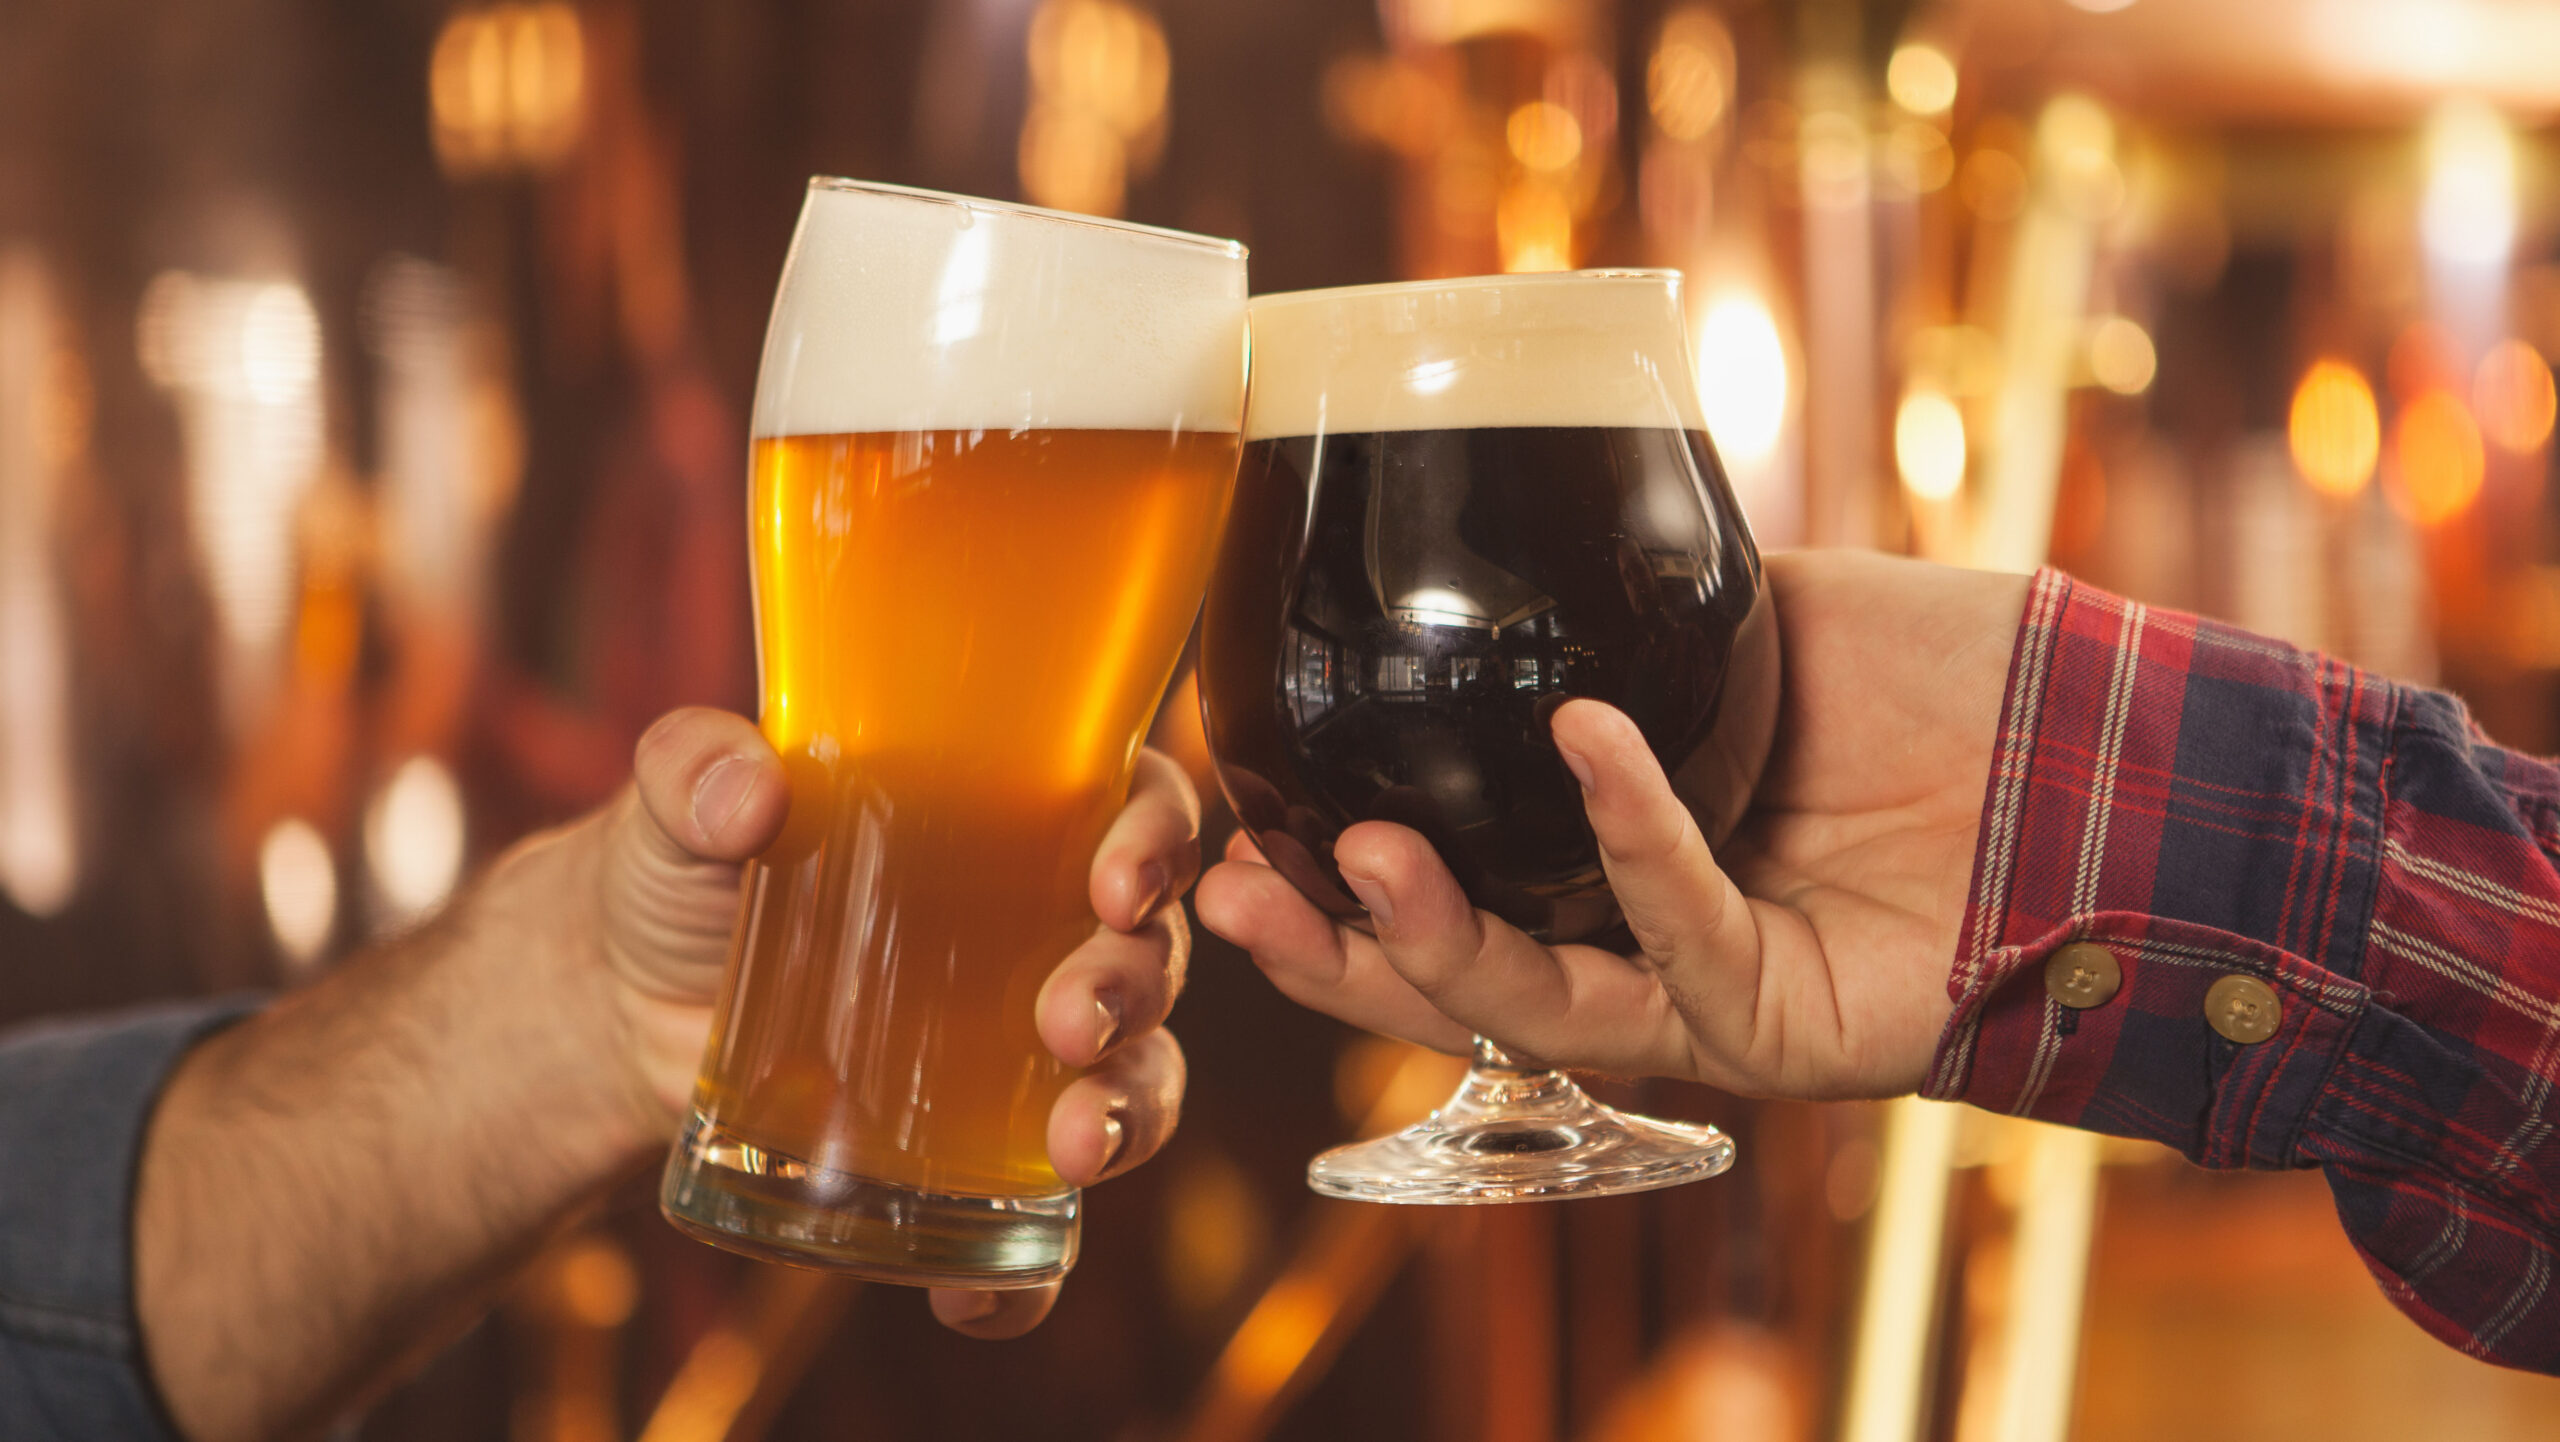 बियर पब में जश्न मनाते हुए, दो लोगों को एक साथ बीयर के गिलास से चिपकाते हुए क्रॉप किया गया। पेशेवर शराब बनाने वाले अपने बीयर के गिलास के साथ टोस्ट कर रहे हैं।